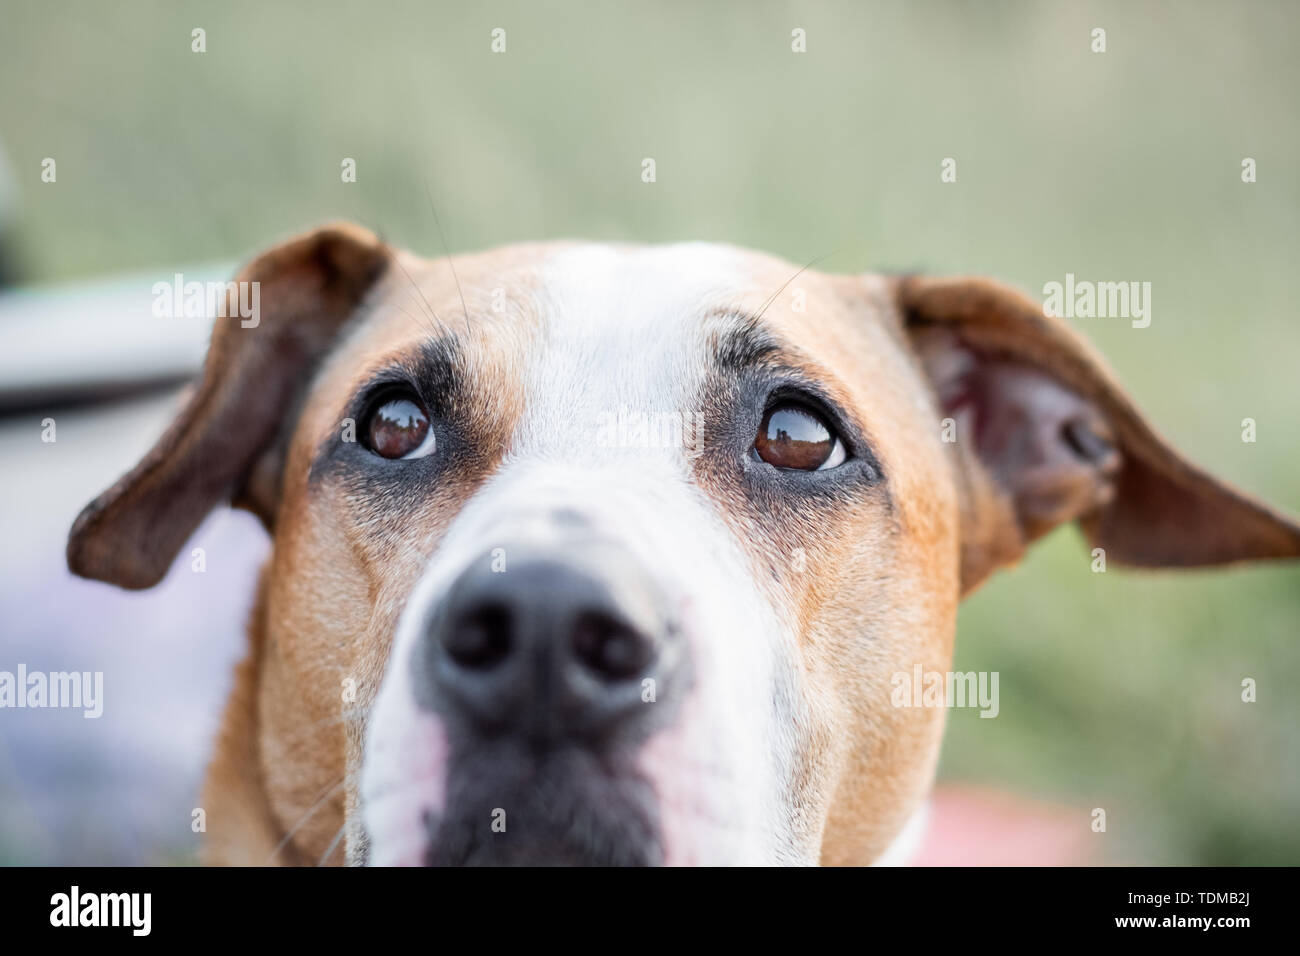 Close-up Portrait von einem Hund suchen, die auf den Augen. Makro-ansicht des Hundes Augen im Freien unter natürlichen Bedingungen, geringe Tiefenschärfe Stockfoto